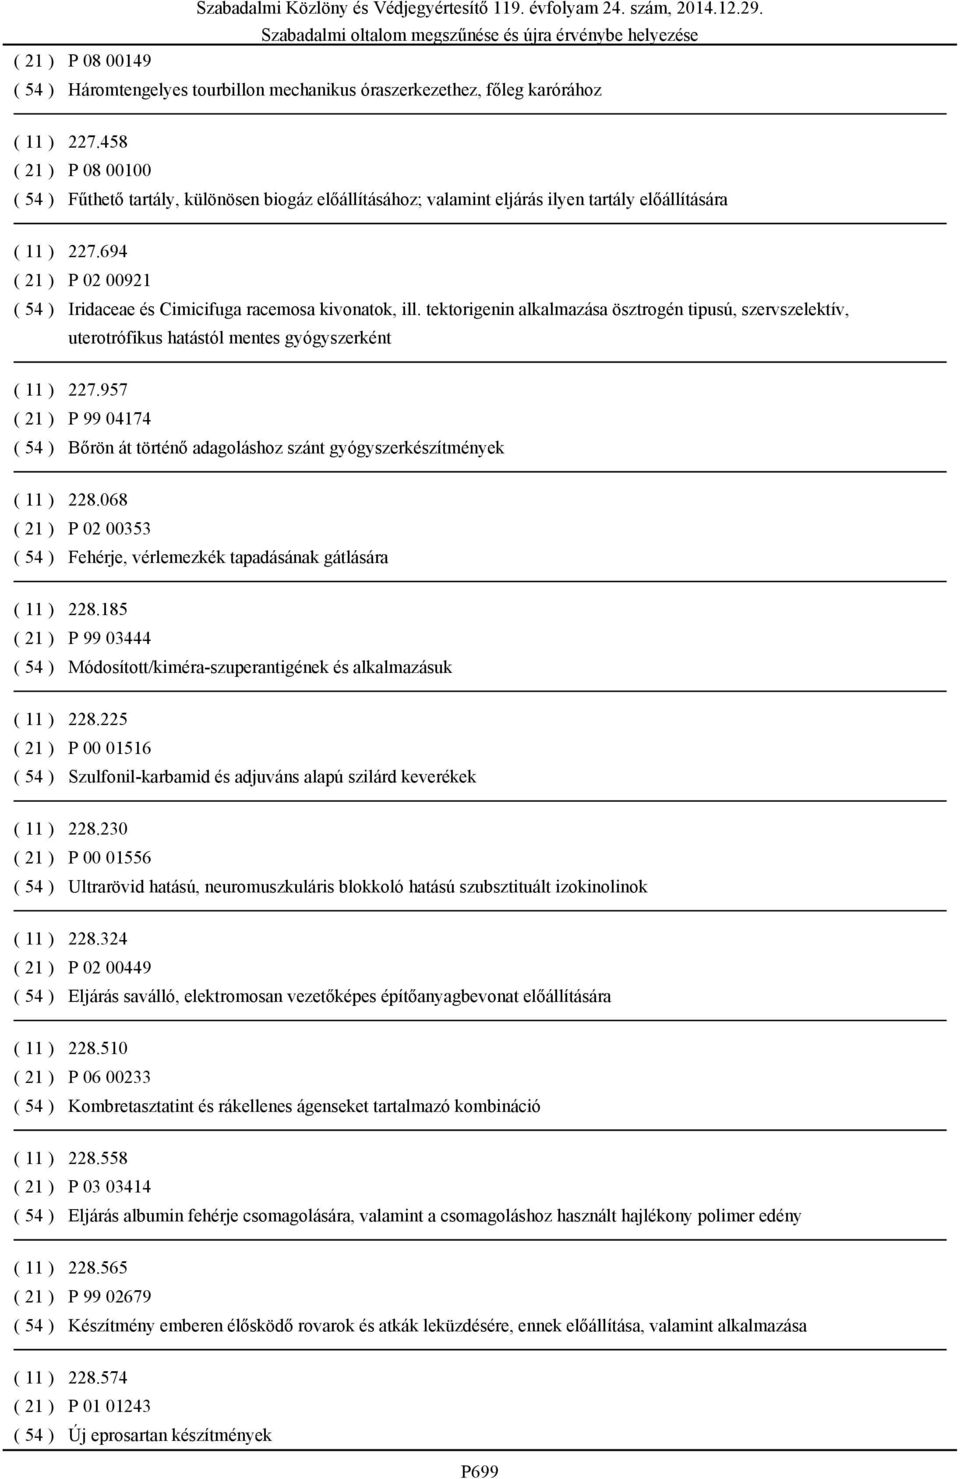 694 ( 21 ) P 02 00921 ( 54 ) Iridaceae és Cimicifuga racemosa kivonatok, ill. tektorigenin alkalmazása ösztrogén tipusú, szervszelektív, uterotrófikus hatástól mentes gyógyszerként ( 11 ) 227.